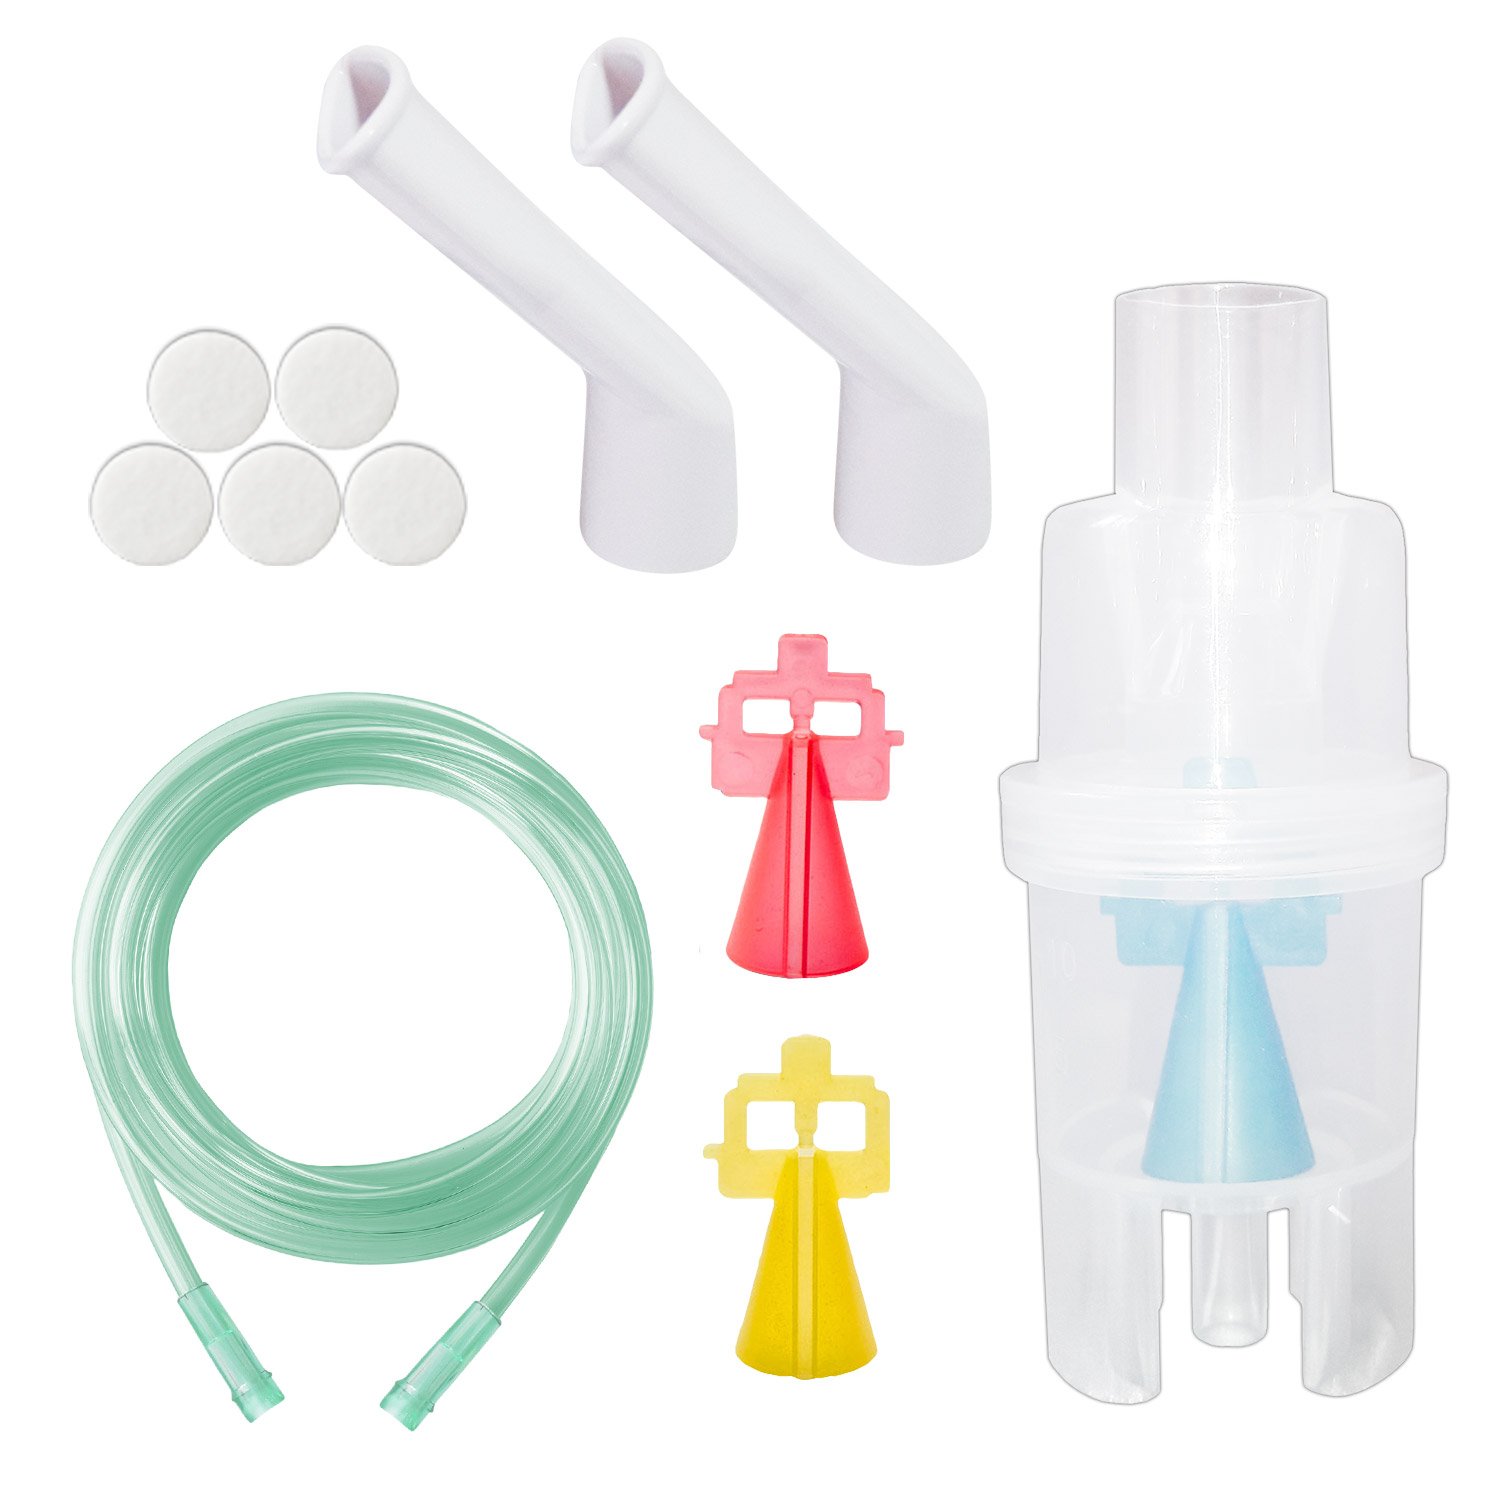 Kit nebulizare Little Doctor Basic, 3 dispensere, particule variabile, pentru aparate aerosoli